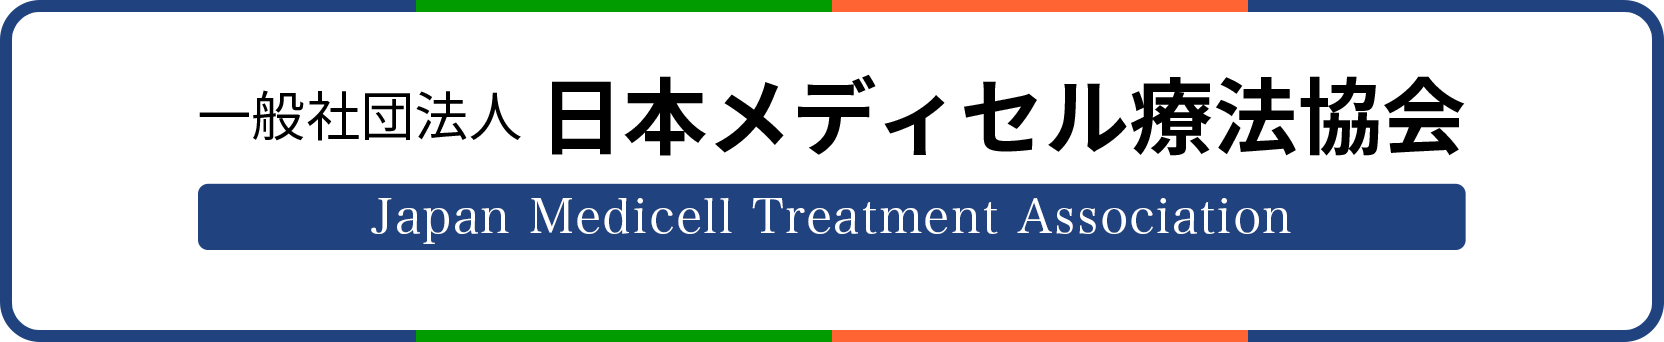 一般社団法人 日本メディセル療法協会 Japan Medicell Treatment Association